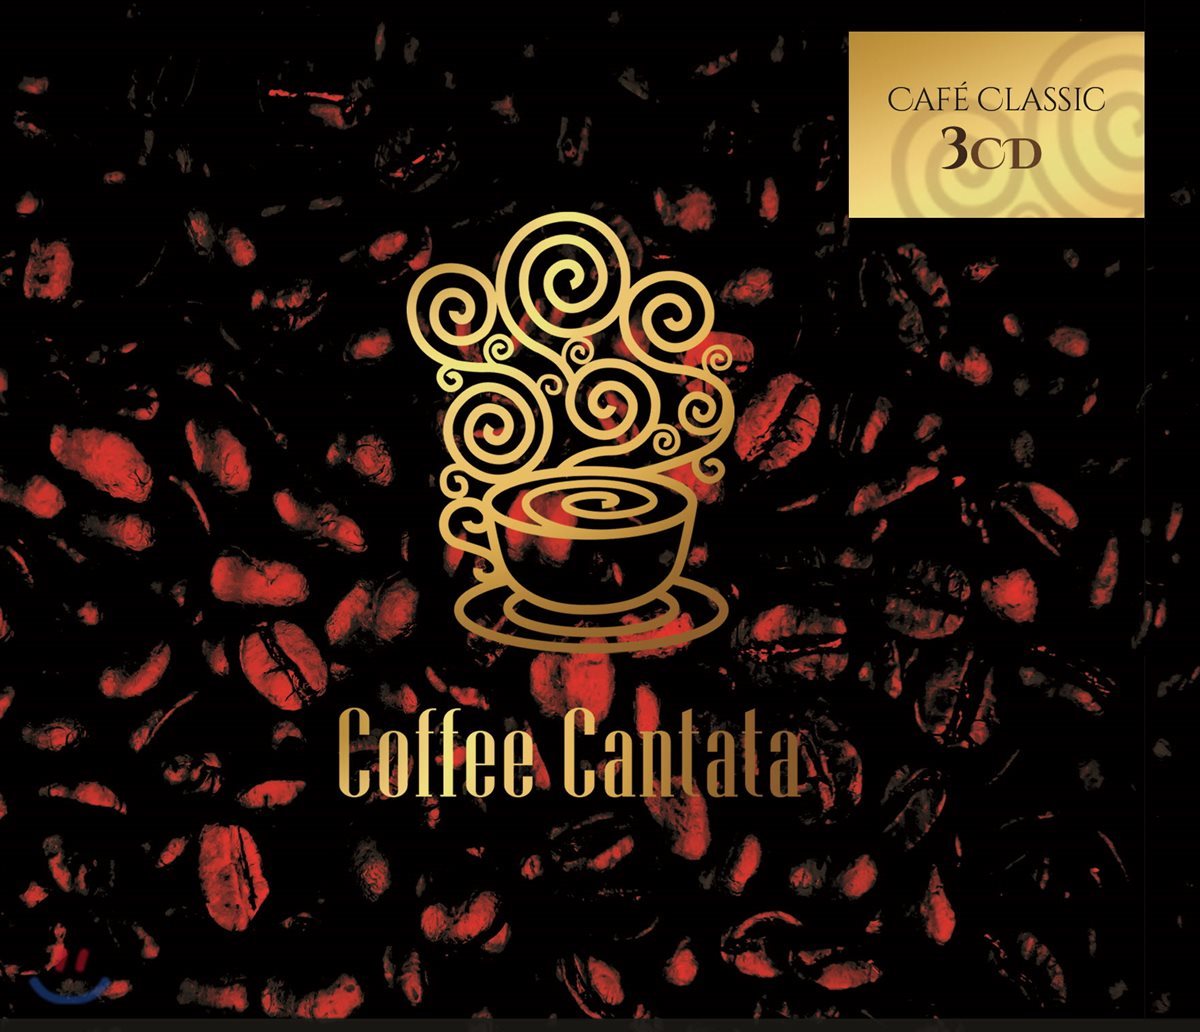 커피 칸타타 - 커피와 관련된 음악 모음집 (Coffee Cantata)